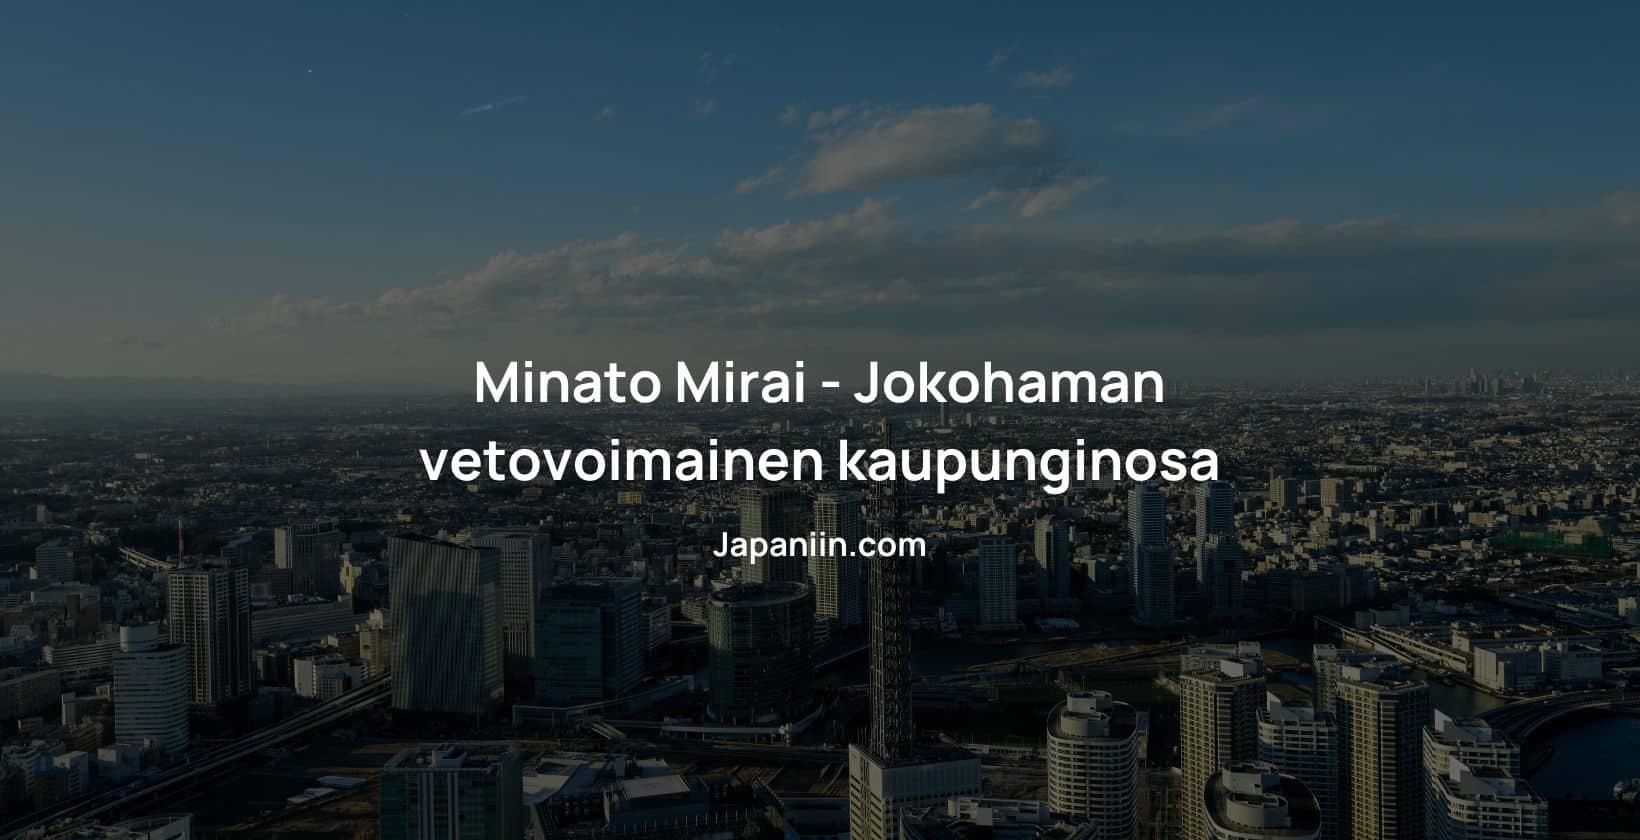 Minato Mirain on tunnettu kaupungiosan Jokohamassa.